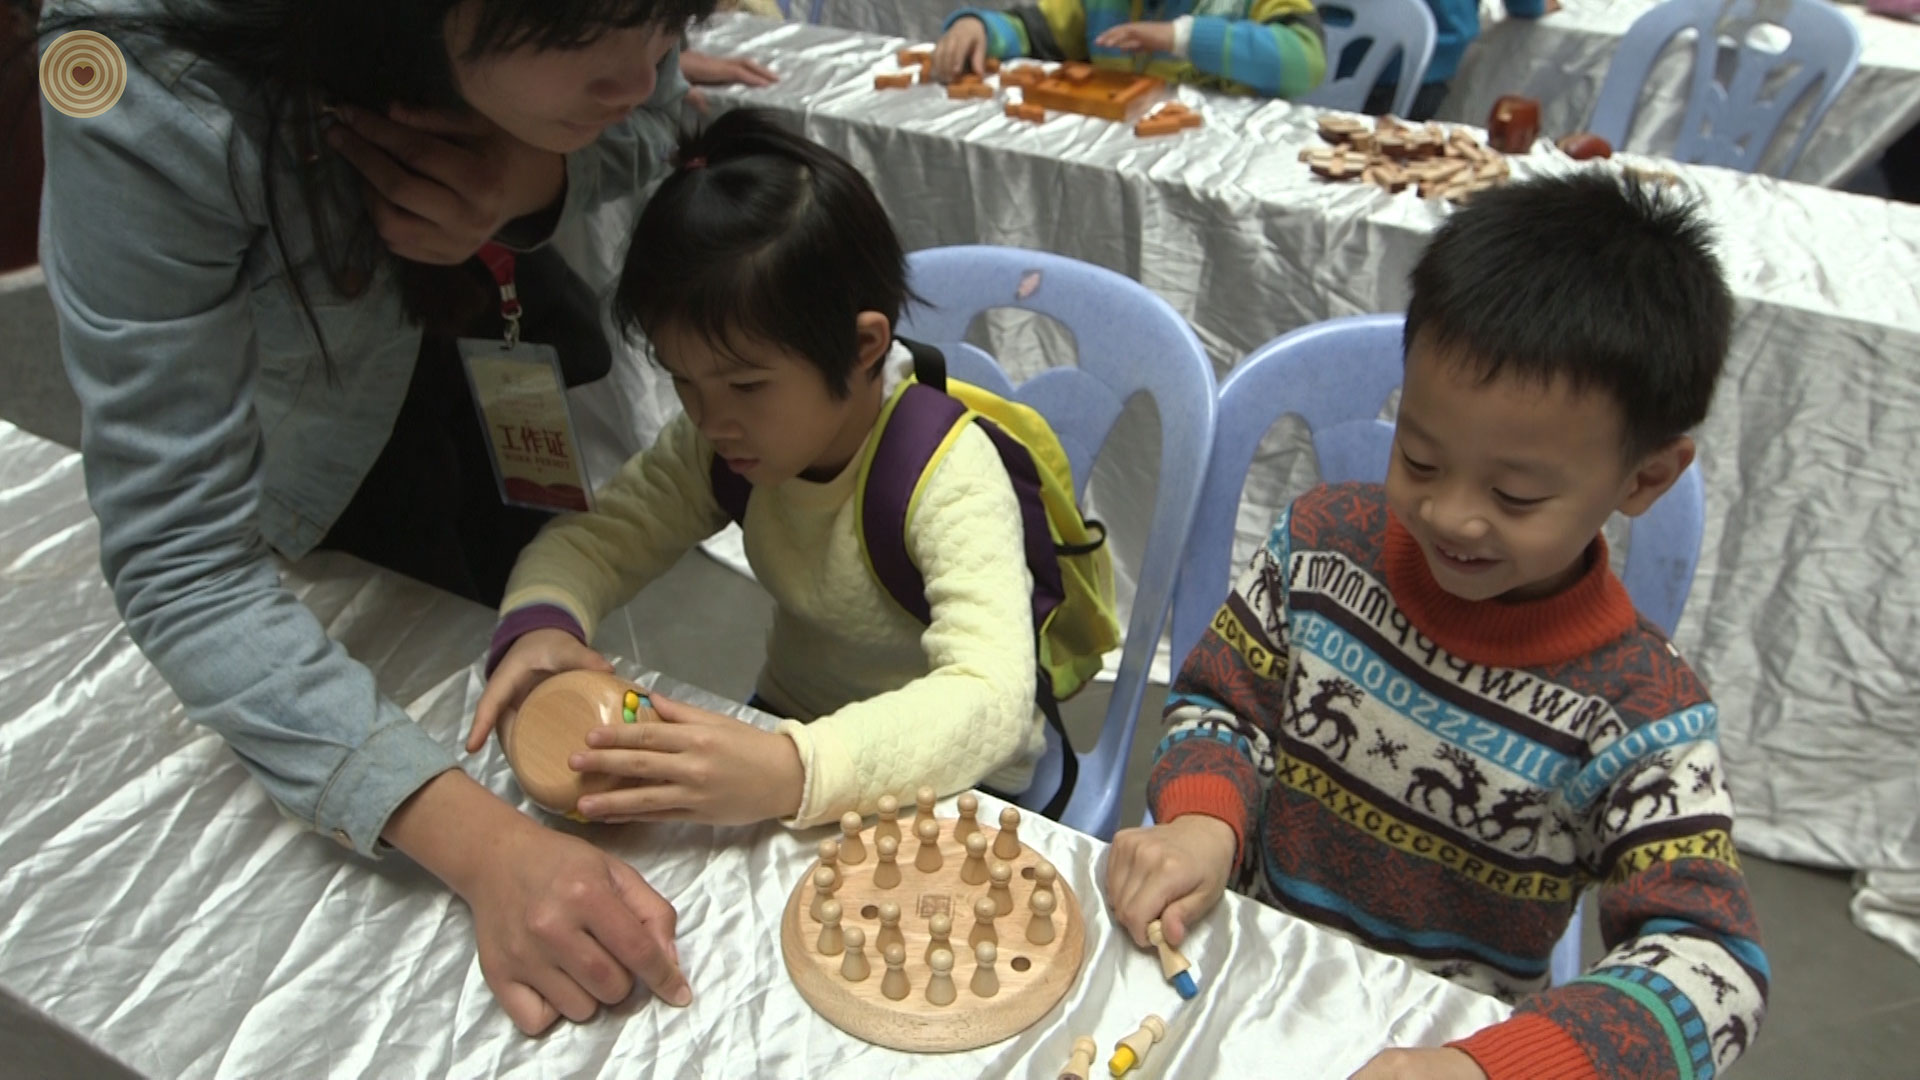 children's event, 2014 World Wood Day